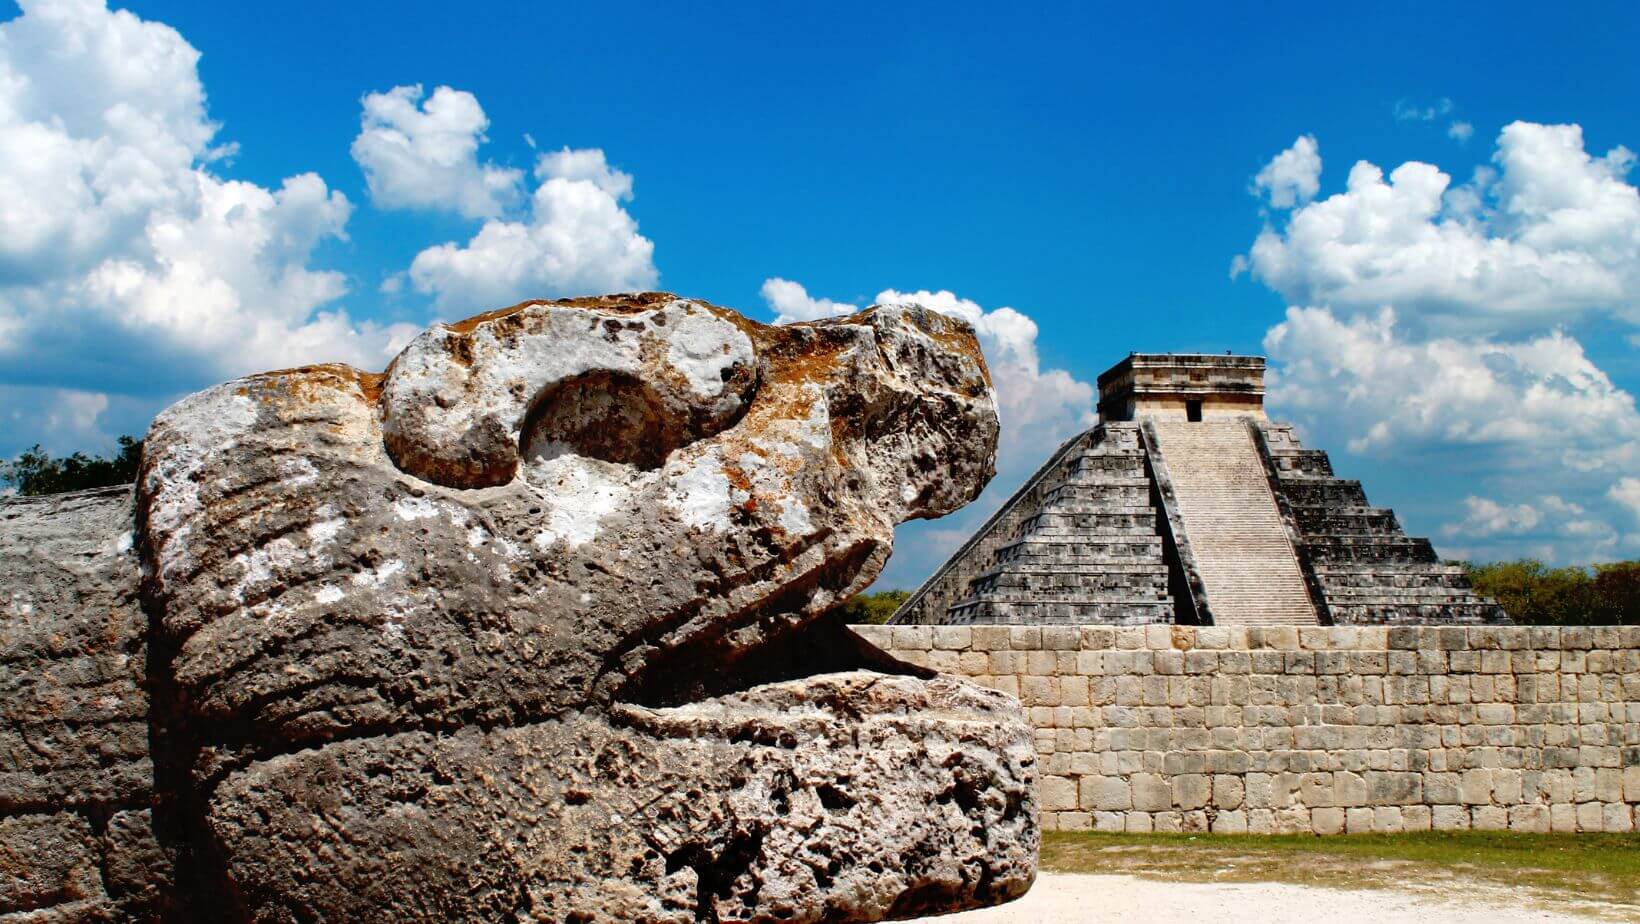 Serpent and temple at Mayan ruins.